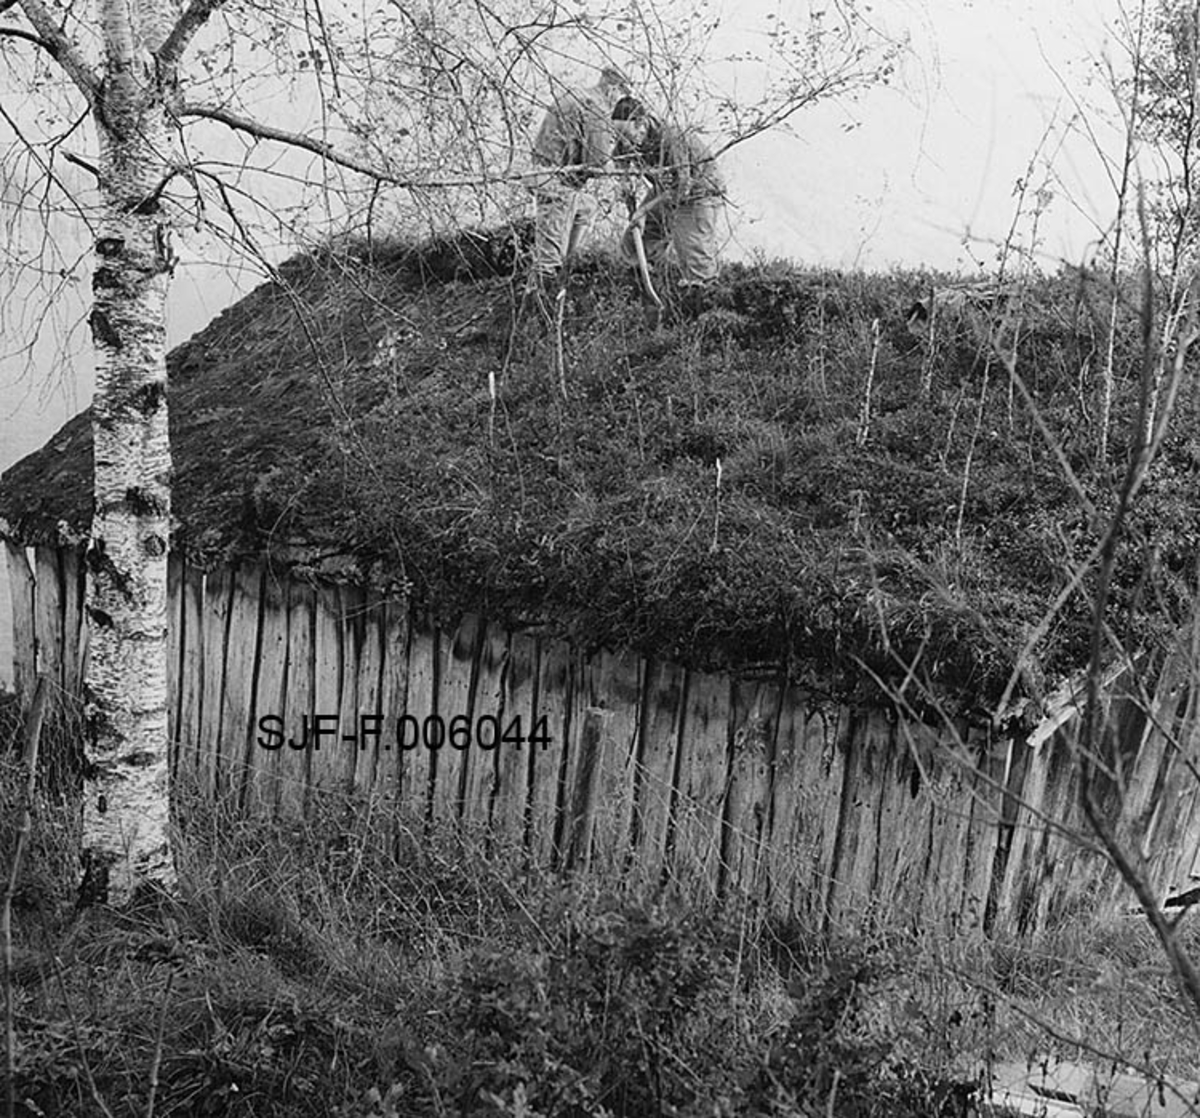 Naustet til Nikolai J. Gjesdal (1889-1973) ved Vassenden i Jølster i Sunnfjord i Sogn og Fjordane.  Fotografiet er tatt fra bakkekammen på oversida av bygningen, mot den ene av langveggene og den ene sida av saltaket. Naustet er en umalt, bordkledd stavkonstruksjon med torvtekt sperretak.  På taket vokste det en god del lauvtrær da fotografiet ble tatt, noe som vel tyder på at det var ei stund siden taket ble lagt om da dette fotografiet ble tatt.  Det skjedde i 1968, da to arbeidskledde menn var i ferd med å spa ned torva fra taket.  Dette arbeidet ble gjort med henblikk på at naustet skulle demonteres og flyttes til Elverum, hvor det ble gjenoppført i Norsk Skogmuseums friluftsmuseum på Prestøya. I forgrunnen til venstre sto det ei bjørk, i bakgrunnen skimtes vannspeilet på Jølstravatnet. 

Jølsternaustet er 790 centimeter langt og 456 centimeter bredt og har følgelig ei grunnflate på 36 kvadratmeter. På gavlen mot vassdraget er rafthøyden 217 og mønehøyden 365 centimeter.  På den bakre eller vestre gavlen er rafthøyden 125 og mønehøyden 258 centimeter.